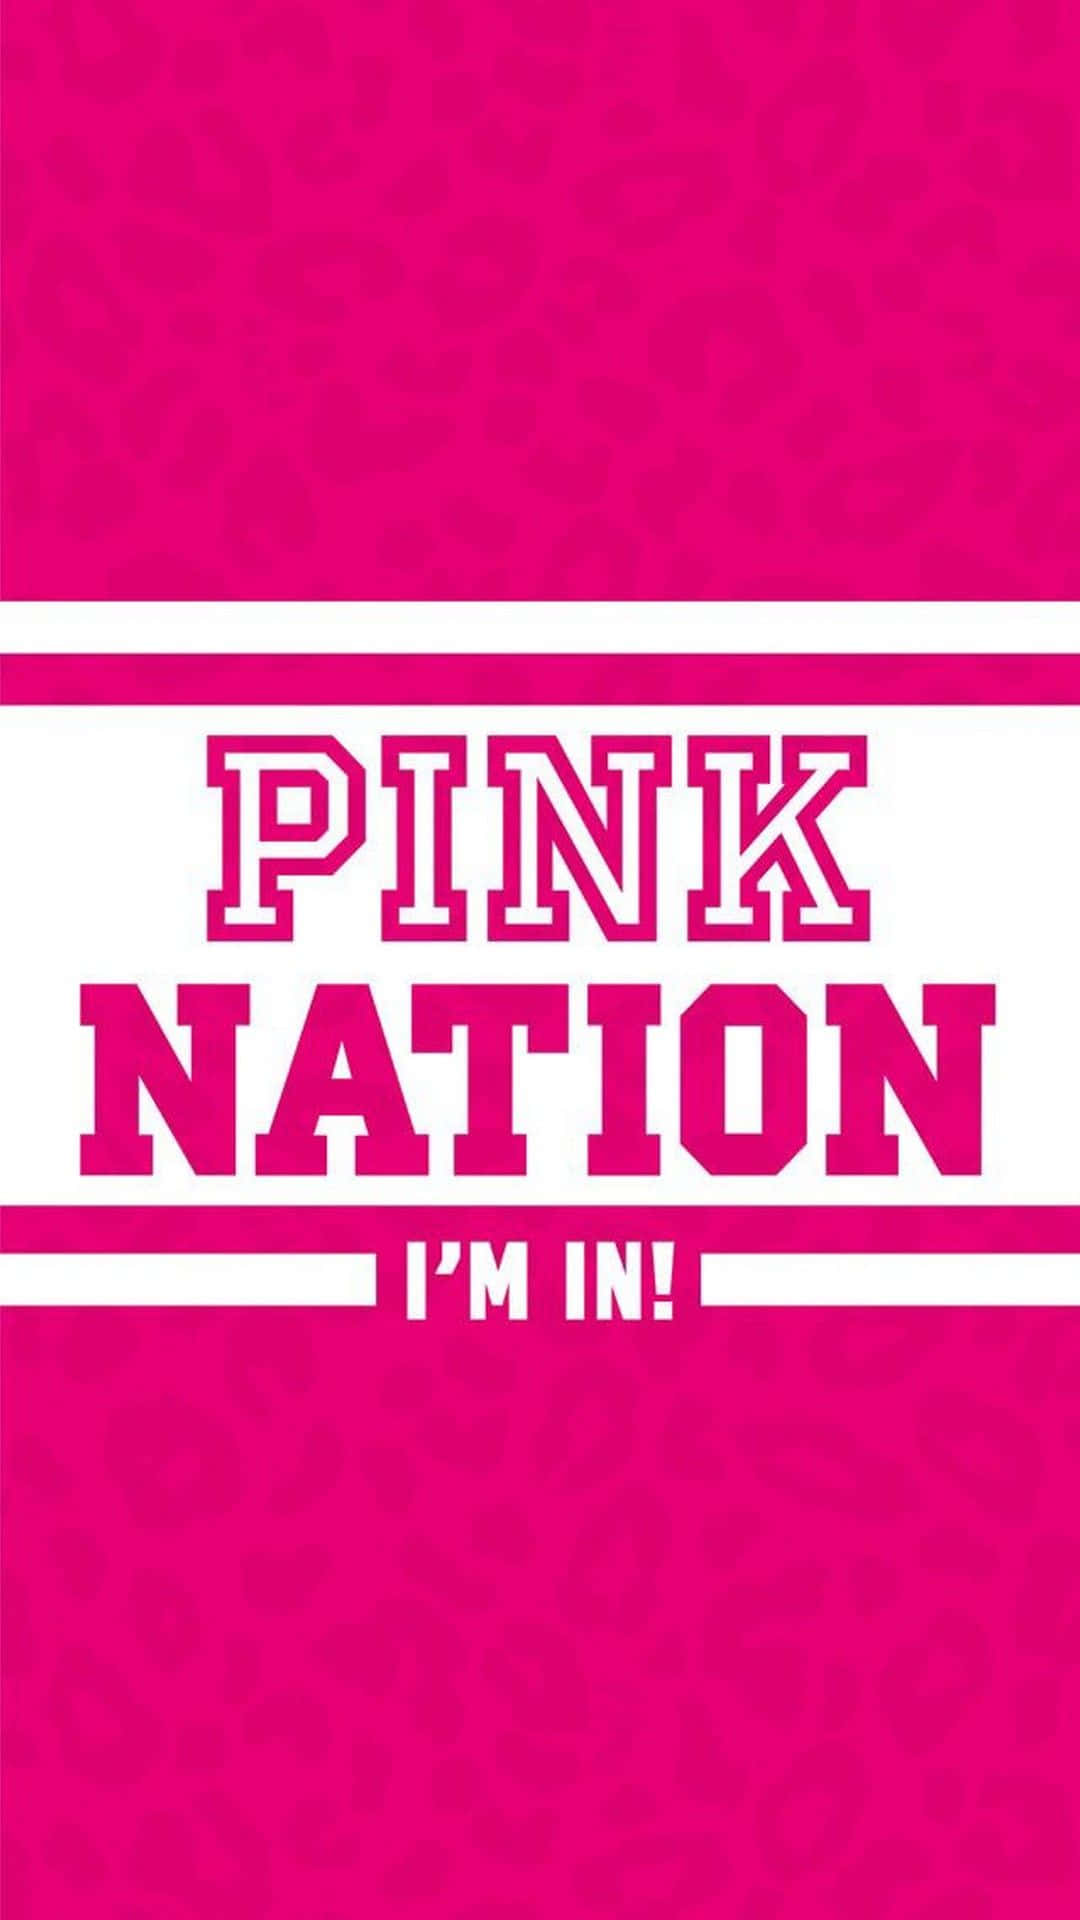 Uniscitia Pink Nation E Unisciti Alla Rivoluzione Dello Stile Di Vita. Sfondo